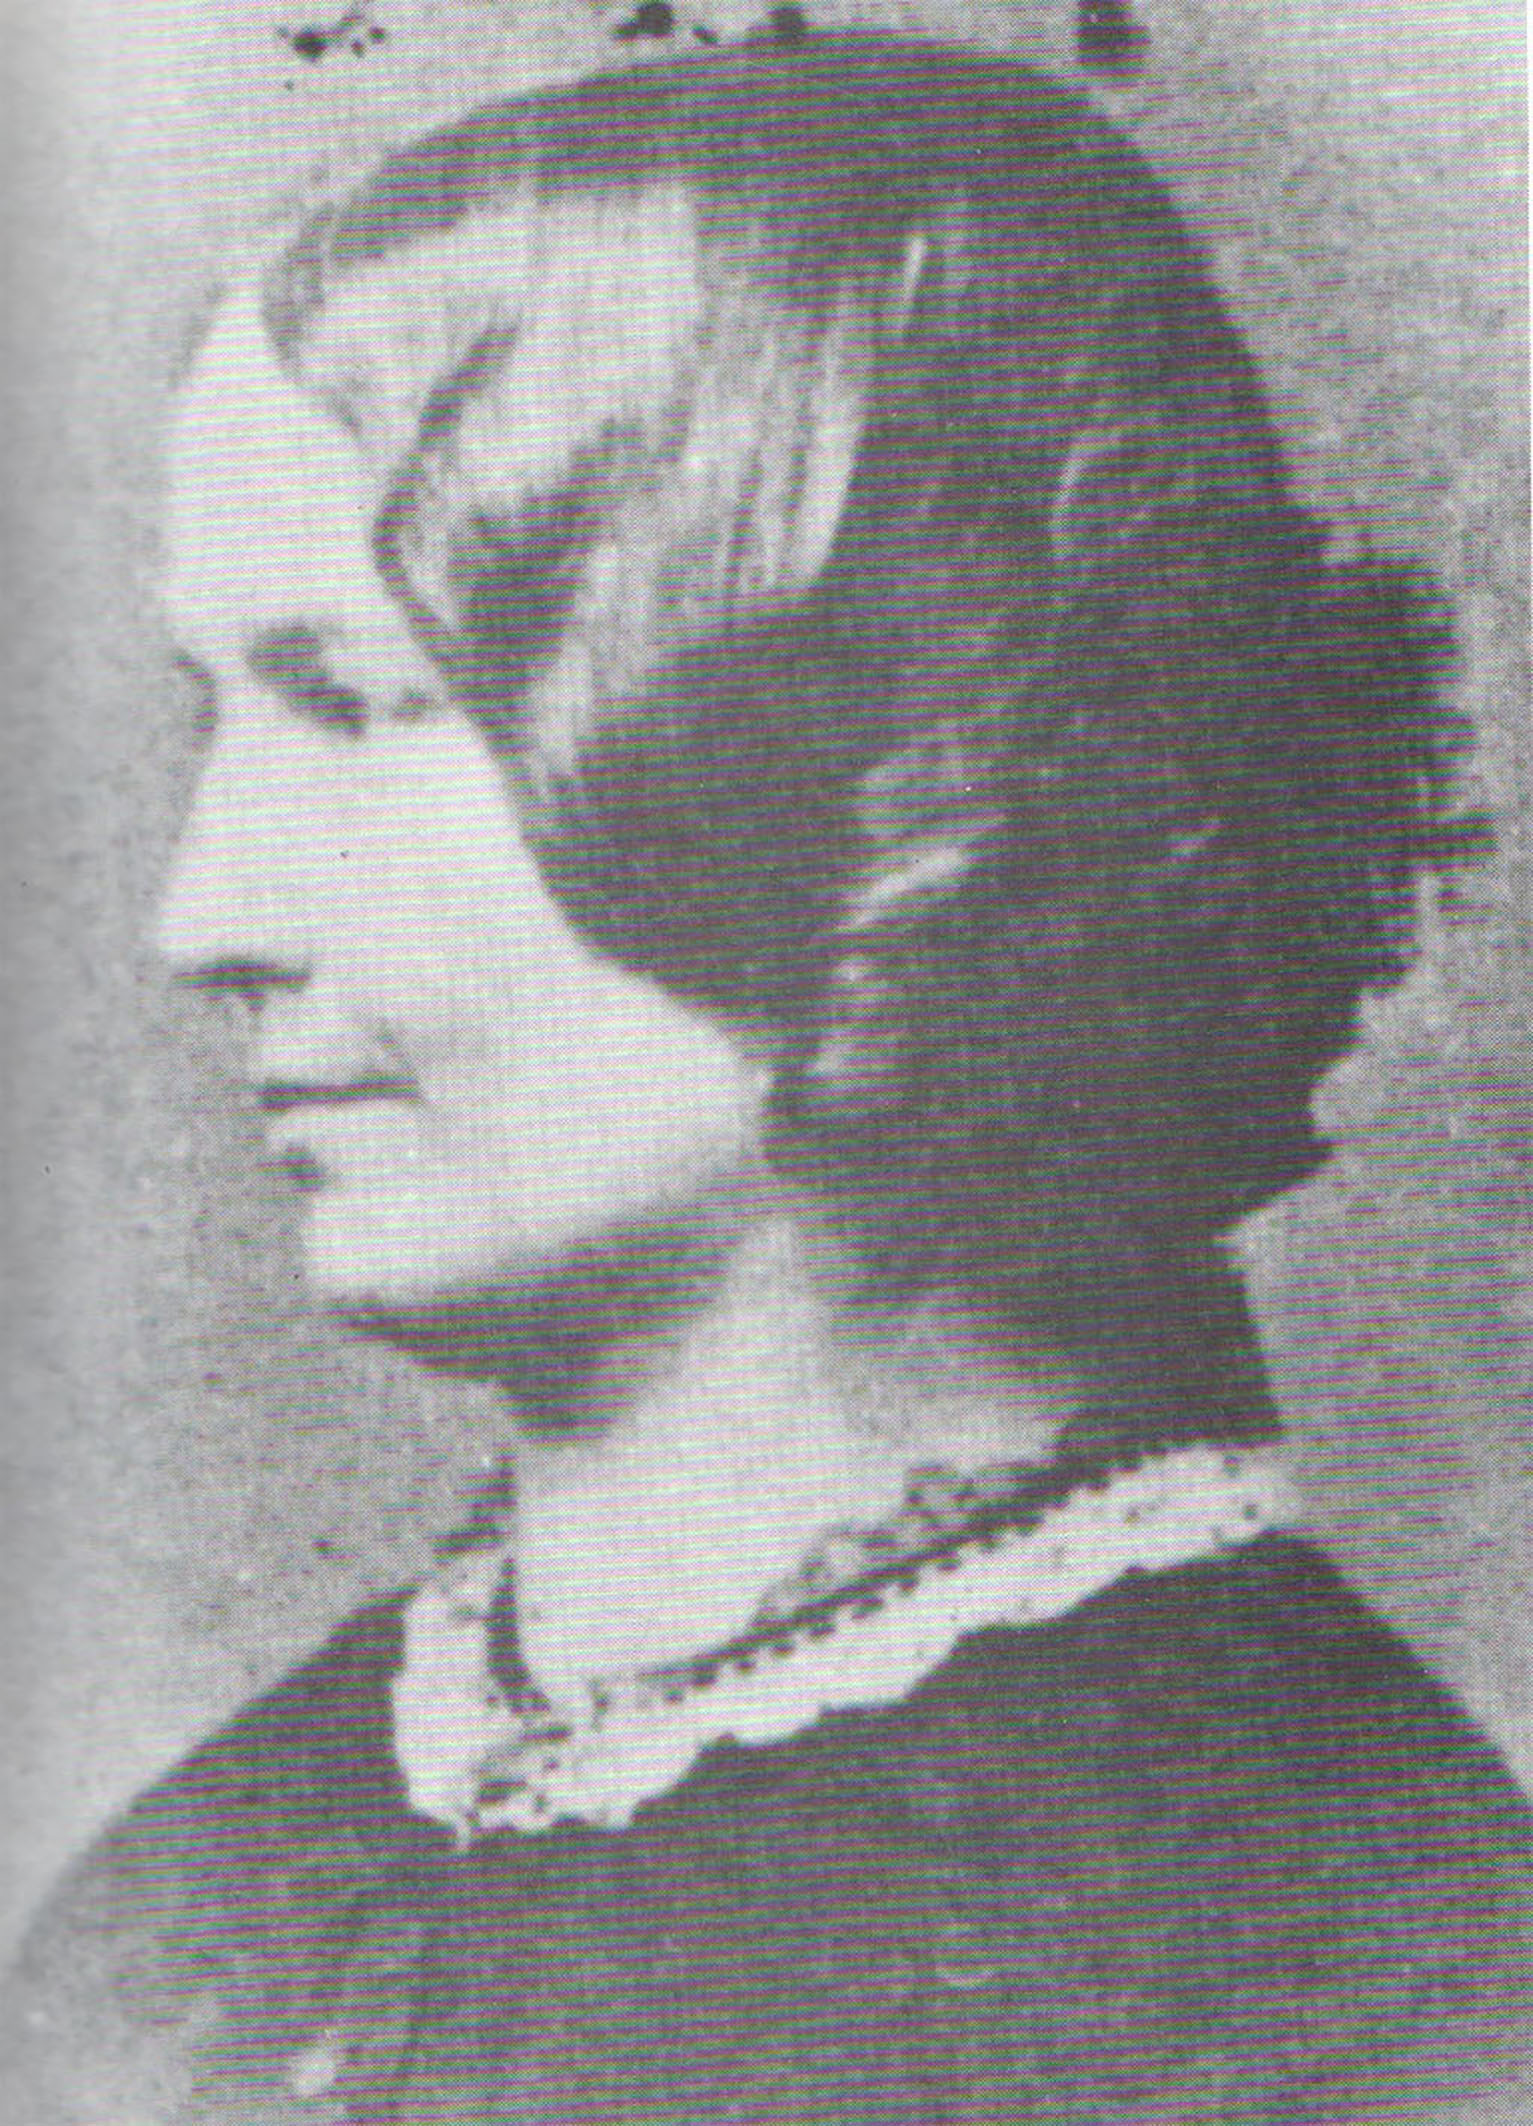 charlotte bronte 1849 novel